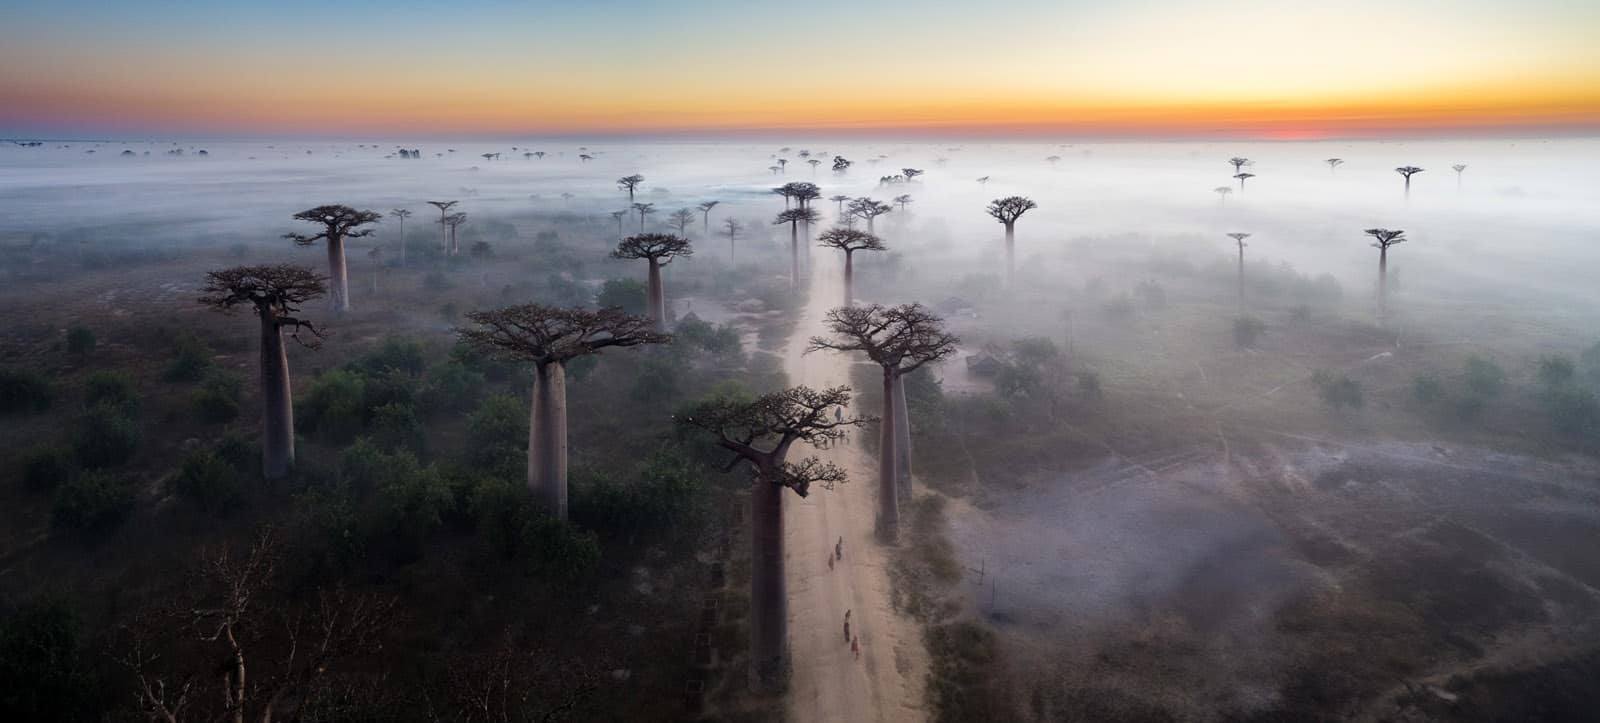 1705 13 050 Allee de Baobab EvM Edit Pano Edit Edit copy 2 - Best Landscape Photography Destinations